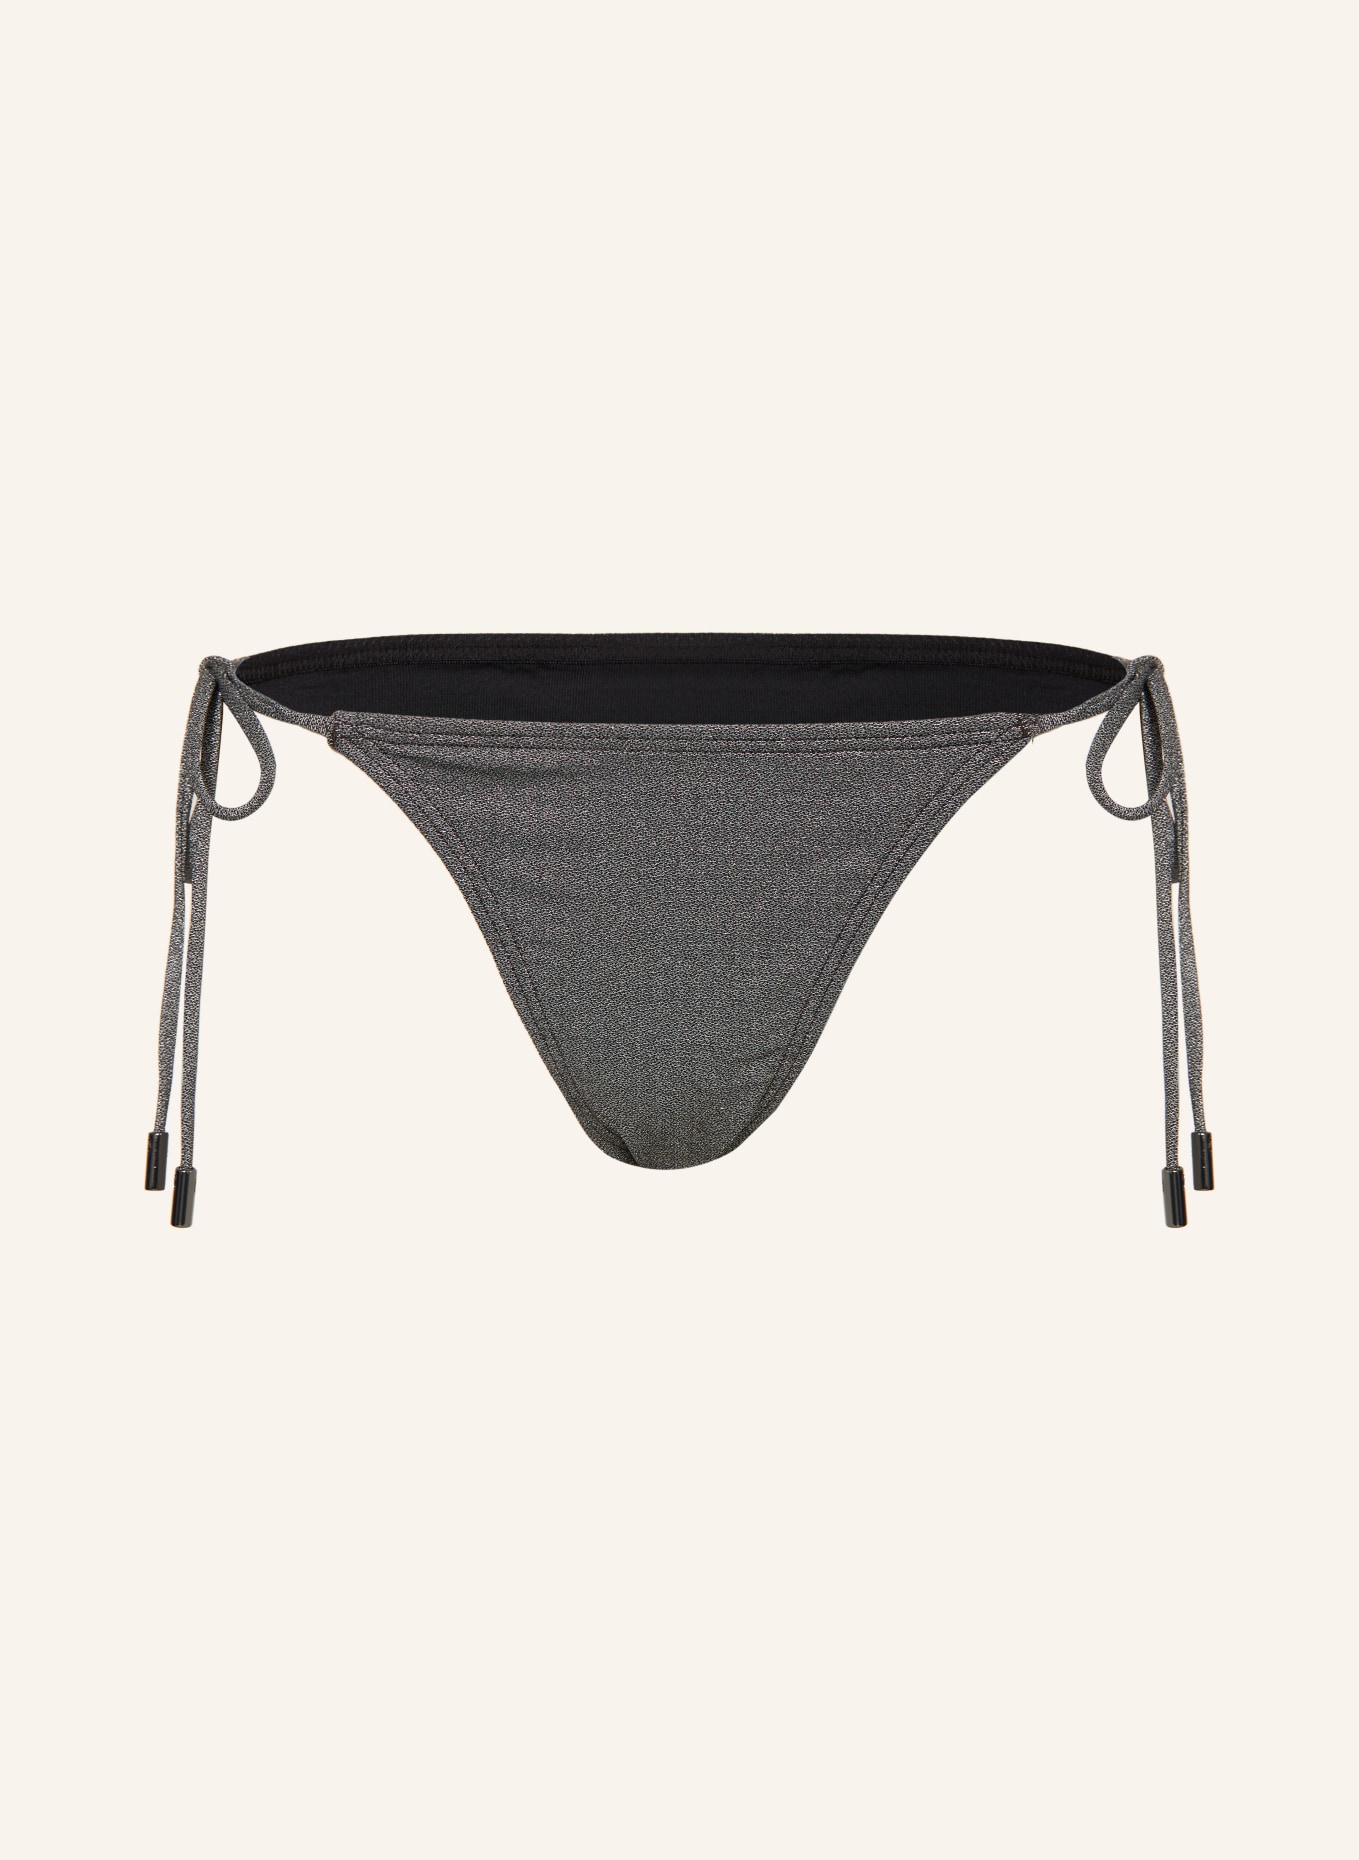 JETS Australia Triangle bikini bottoms LUMEN with glitter thread, Color: SILVER (Image 1)